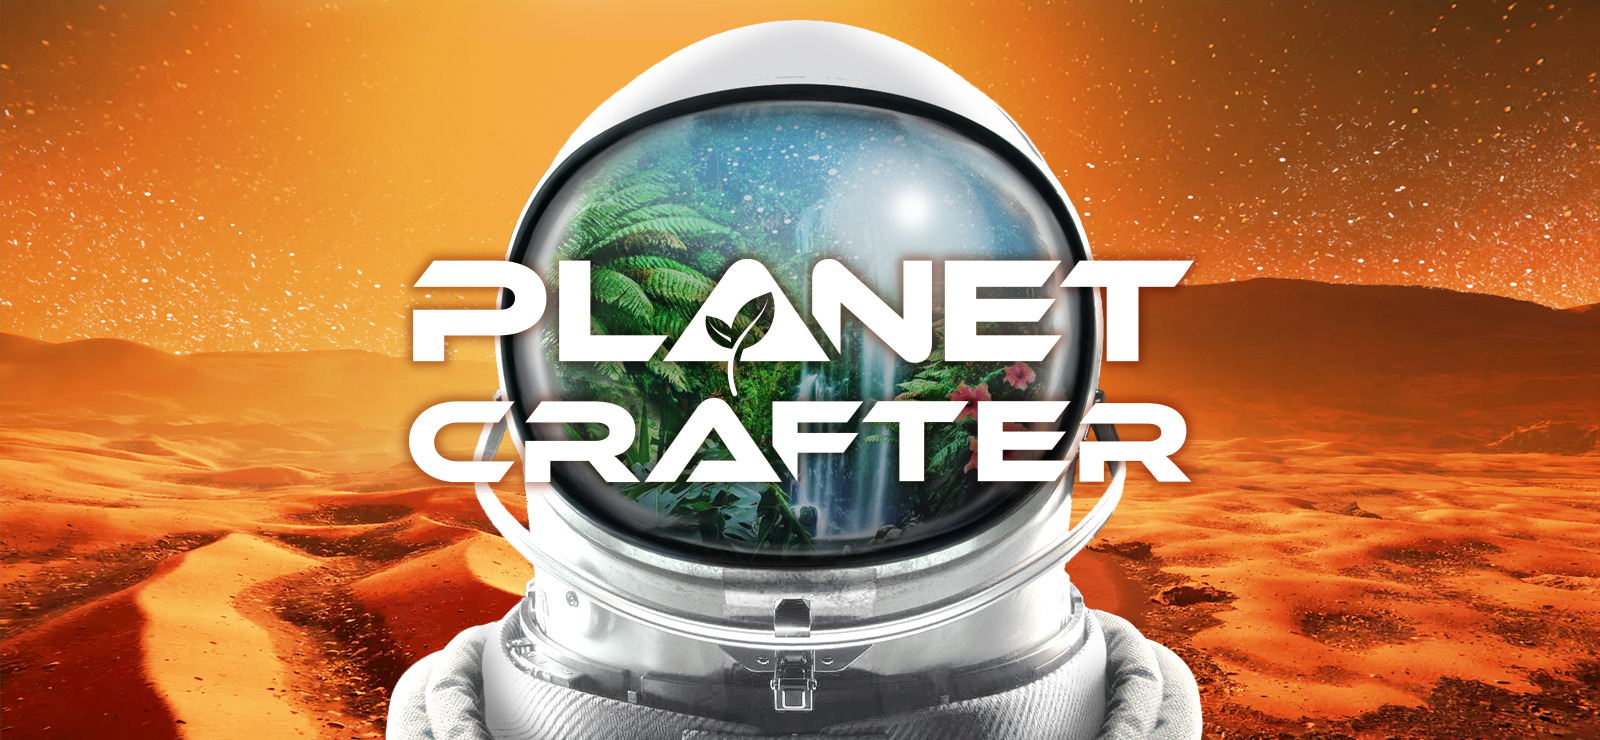 #1 The Planet Crafter | первый взгляд - кооп | пустыня - голубое небо - облака - дождь